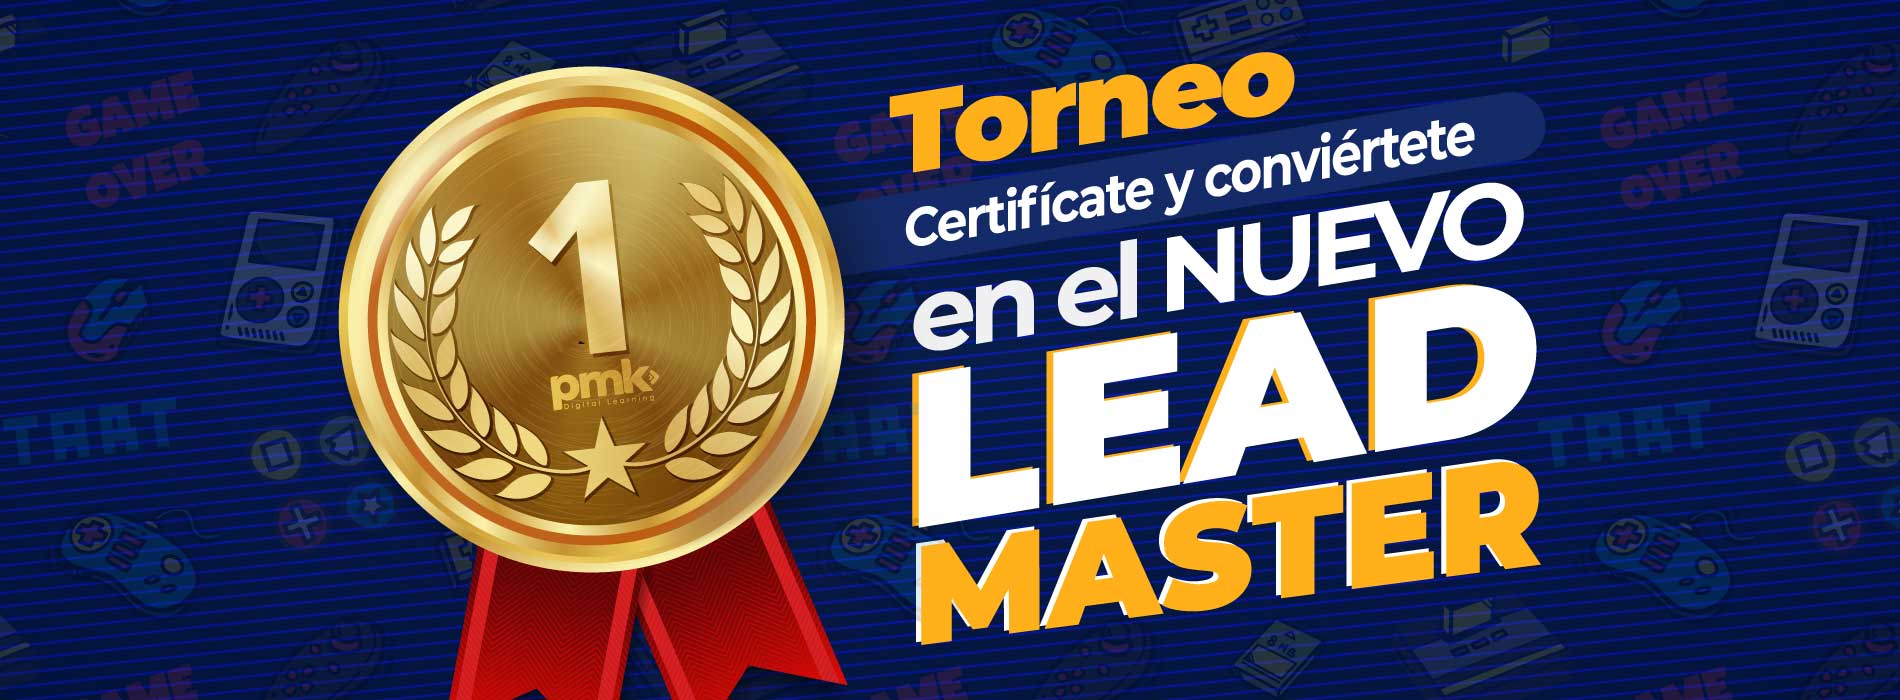 Torneo Lead Master consigue clientes en redes sociales